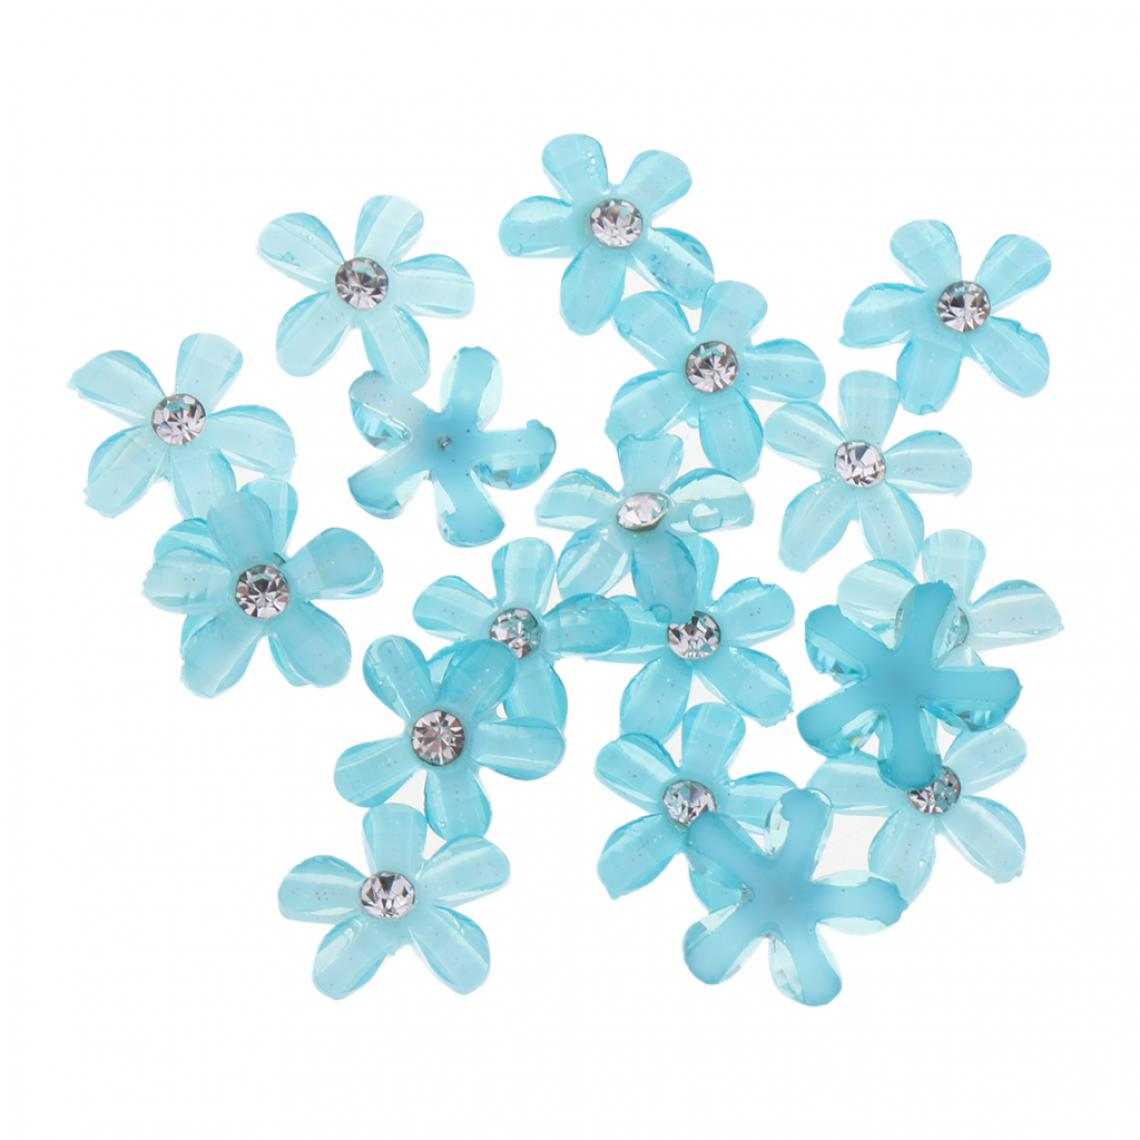 marque generique - 20 fleurs flatback bouton embellissements strass pour mariage violet - Poignée de meuble